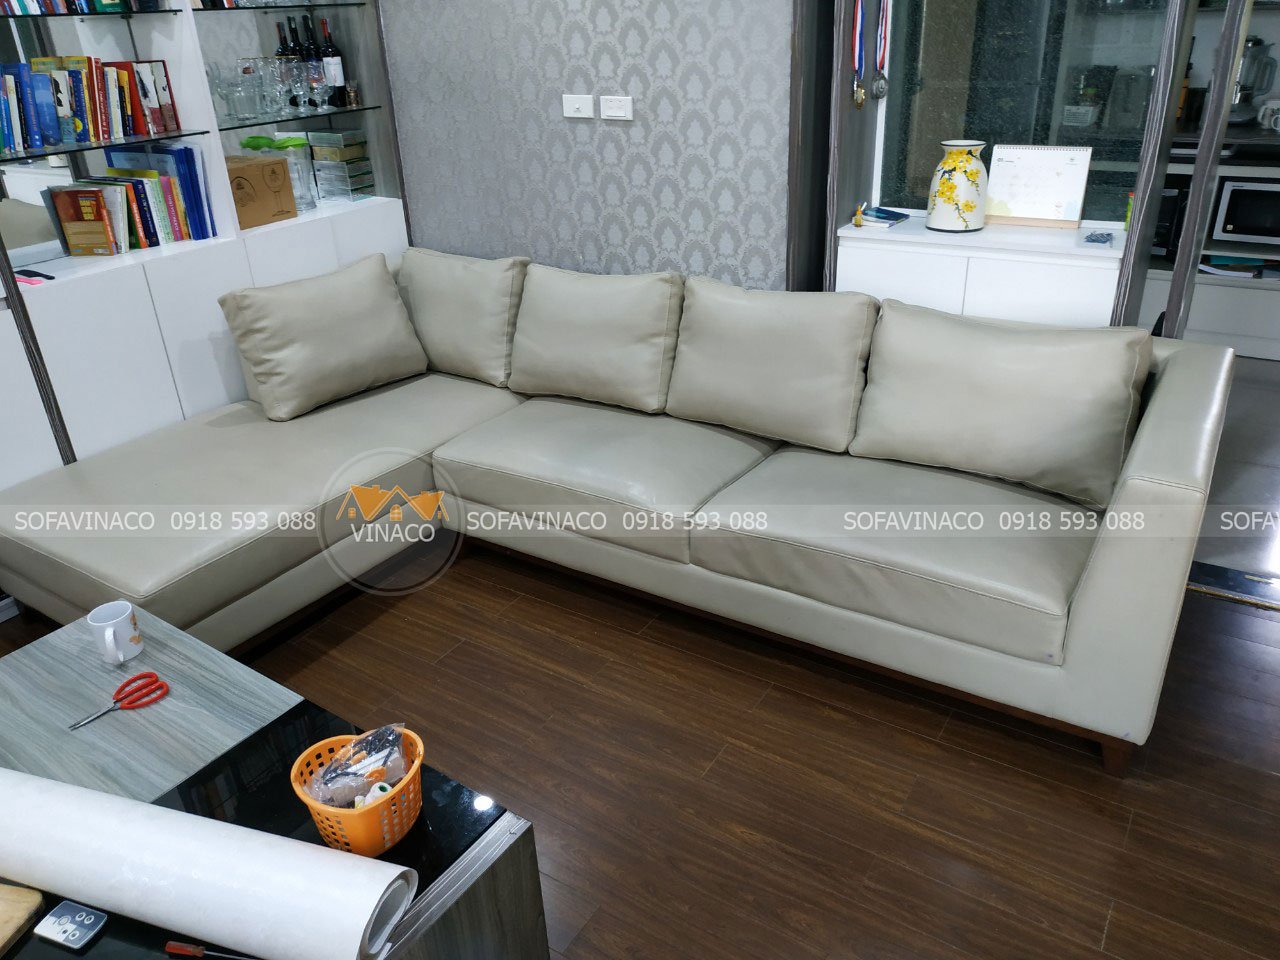 Bảo dưỡng + sửa chữa ghế sofa da hỏng trầm trọng - anh Kiên tại Ciputra, Hà Nội